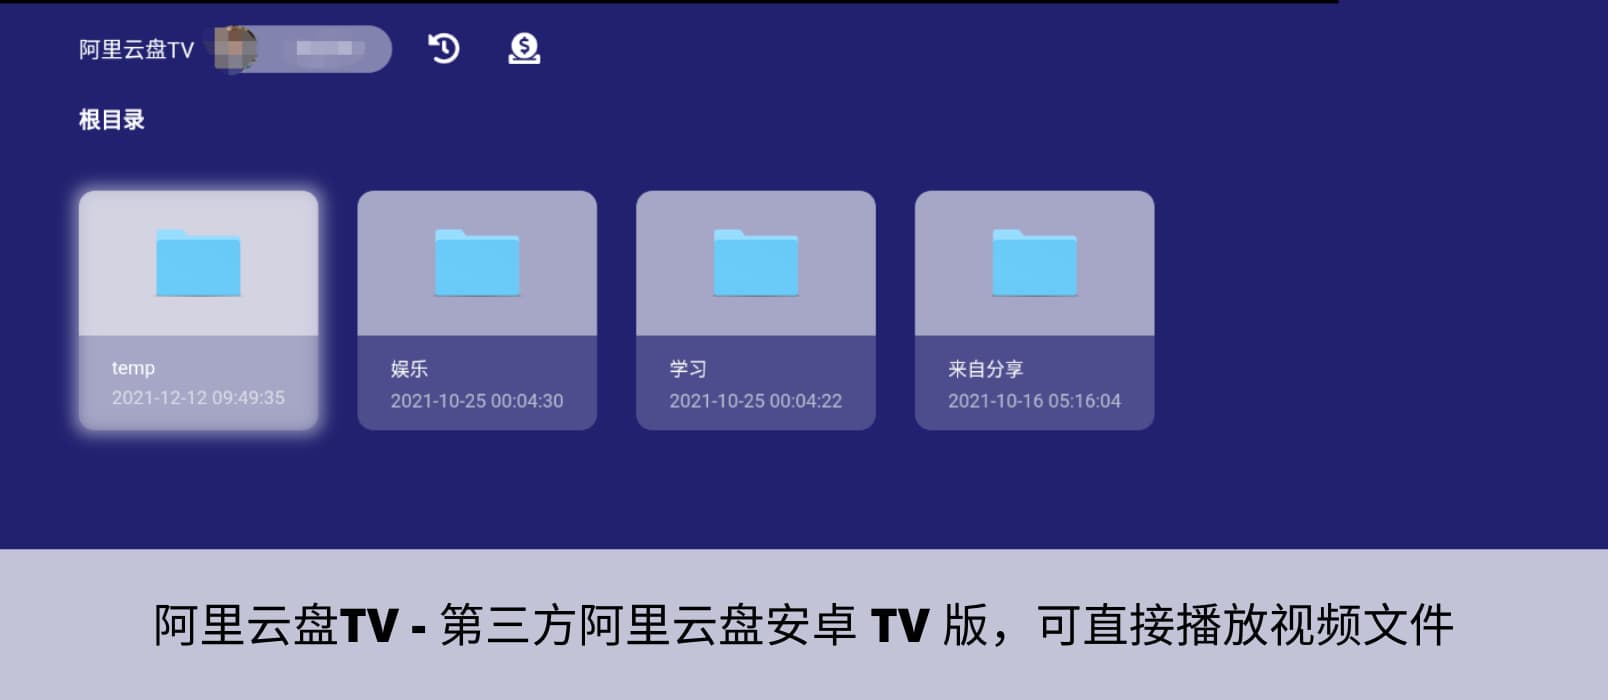 阿里云盘TV - 第三方阿里云盘安卓 TV 版，可直接播放视频文件